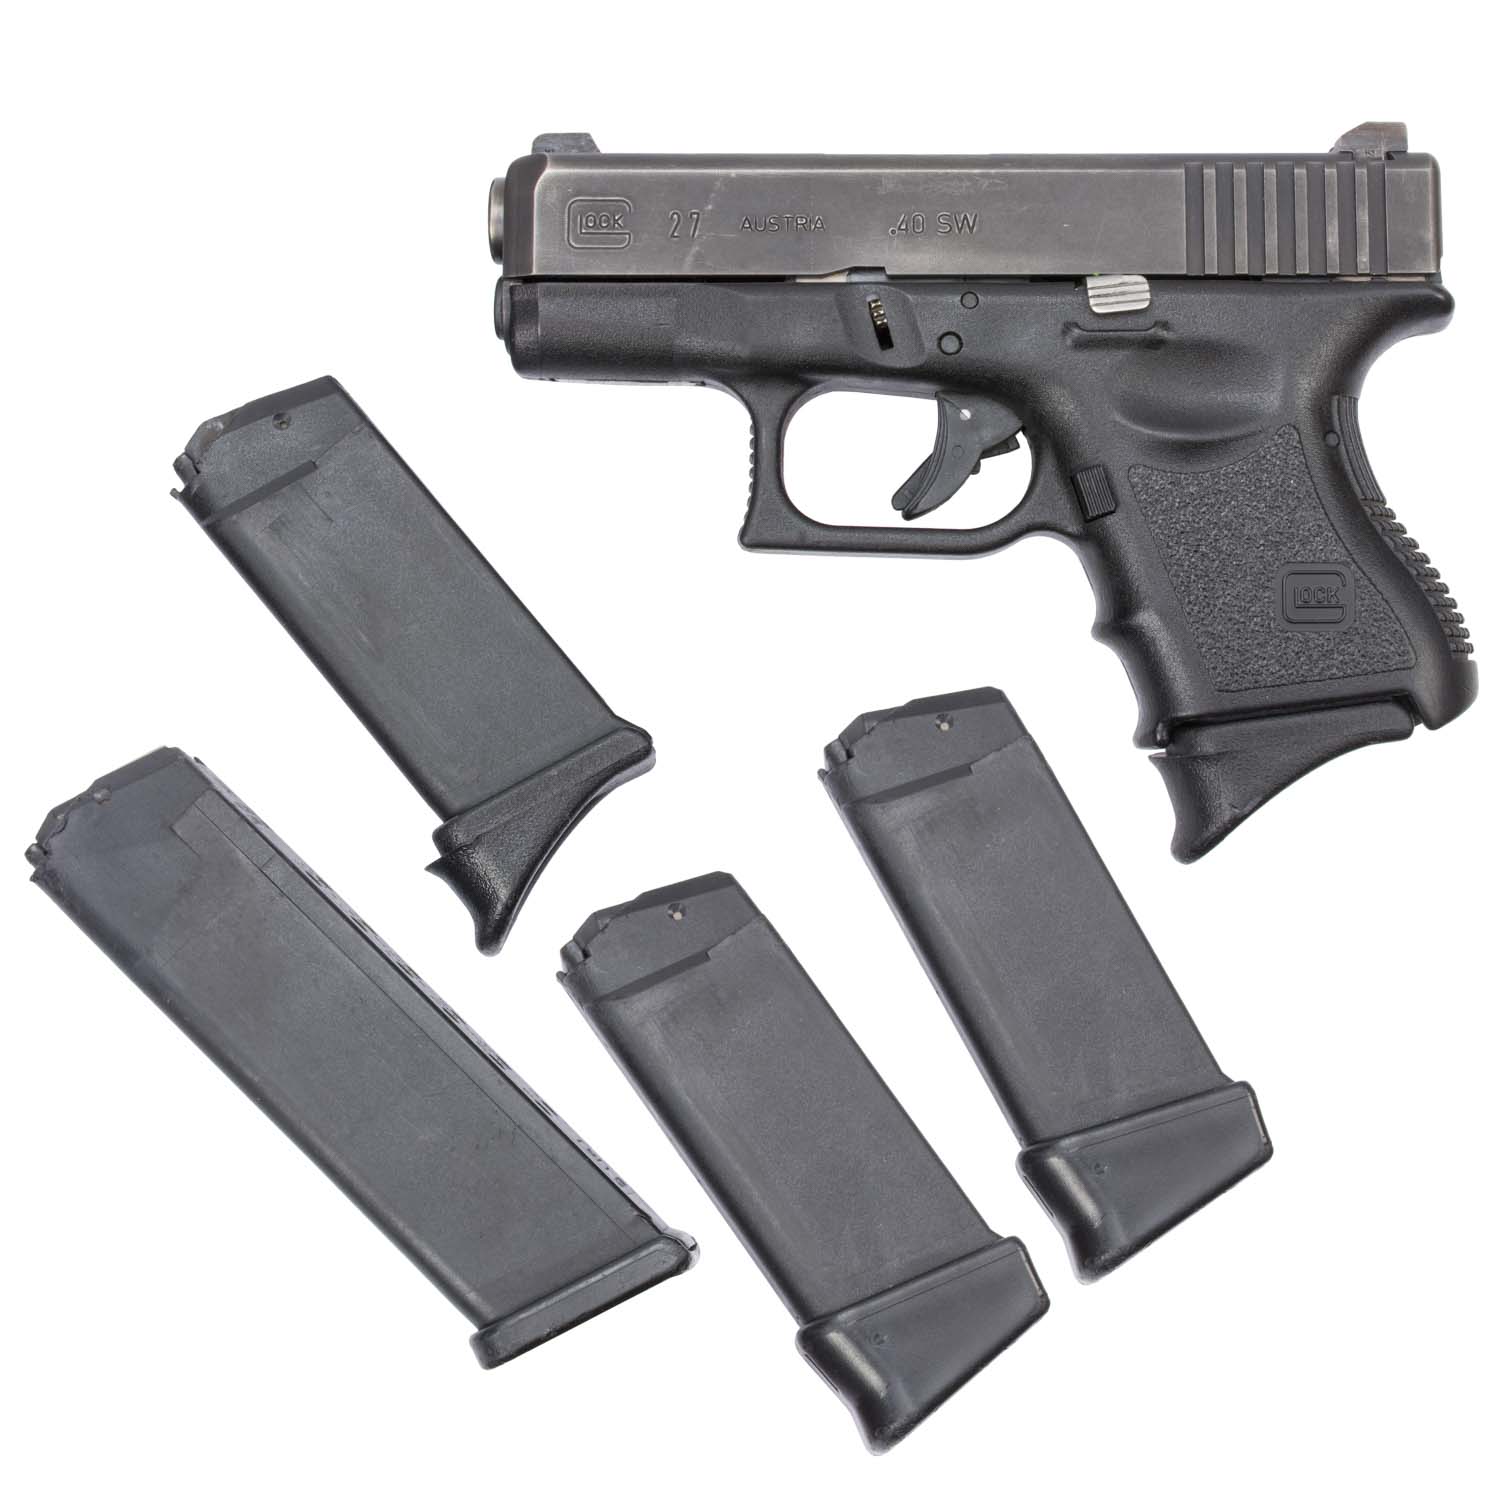 Genuine Glock 27 40 S&w Pistol Gun 9 Round Magazine Packaged 